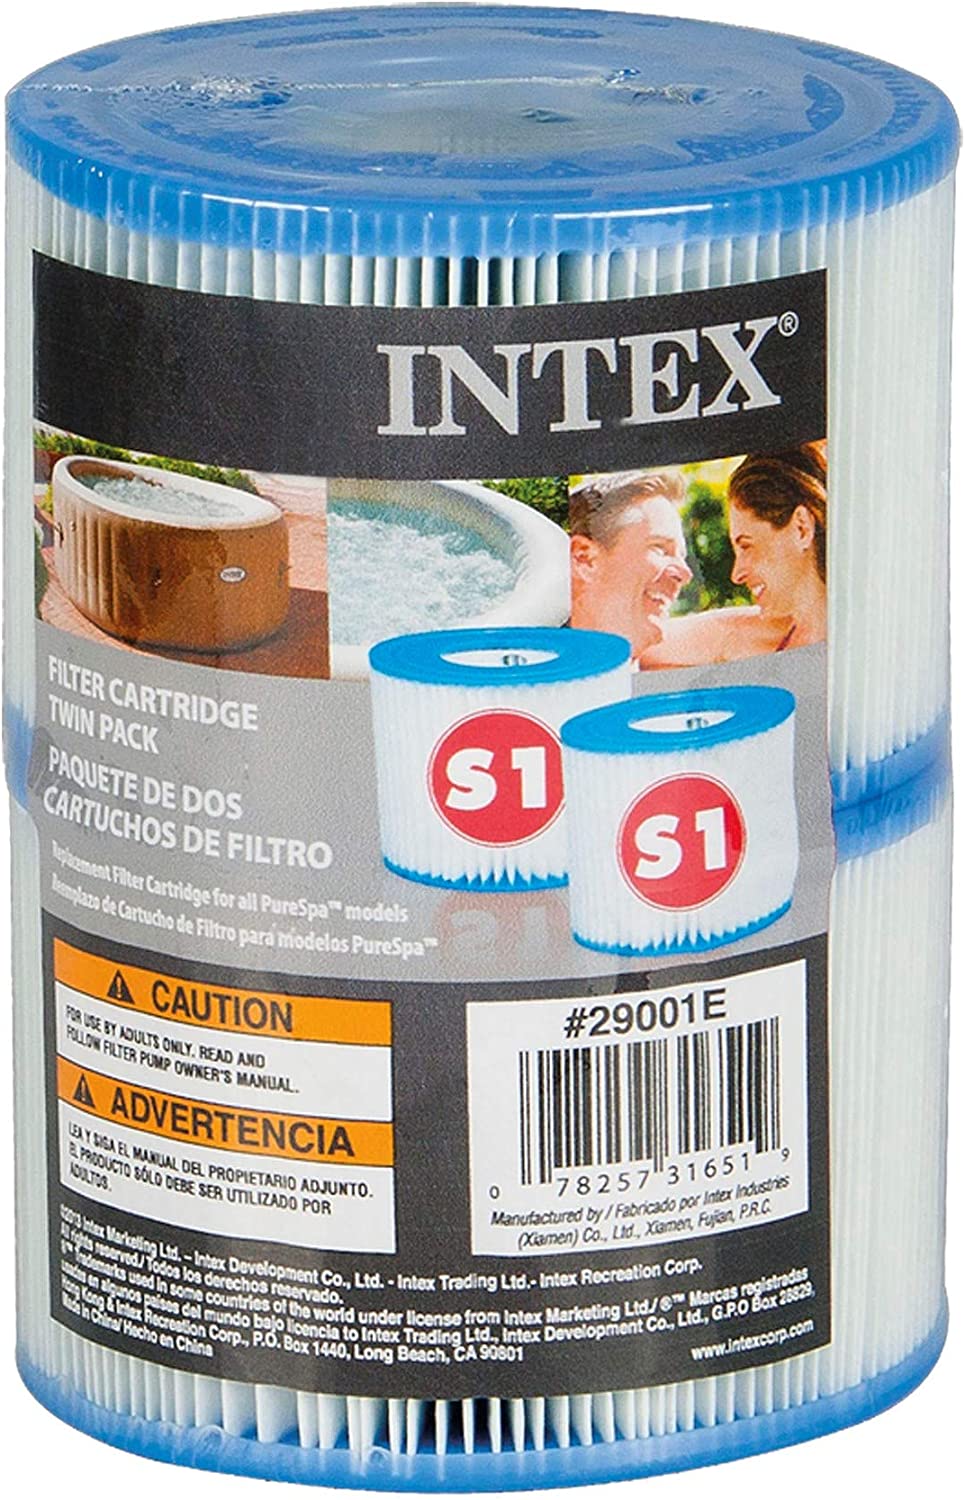 2x Intex Filterkartusche S1 (Doppelpack), Art. 29001